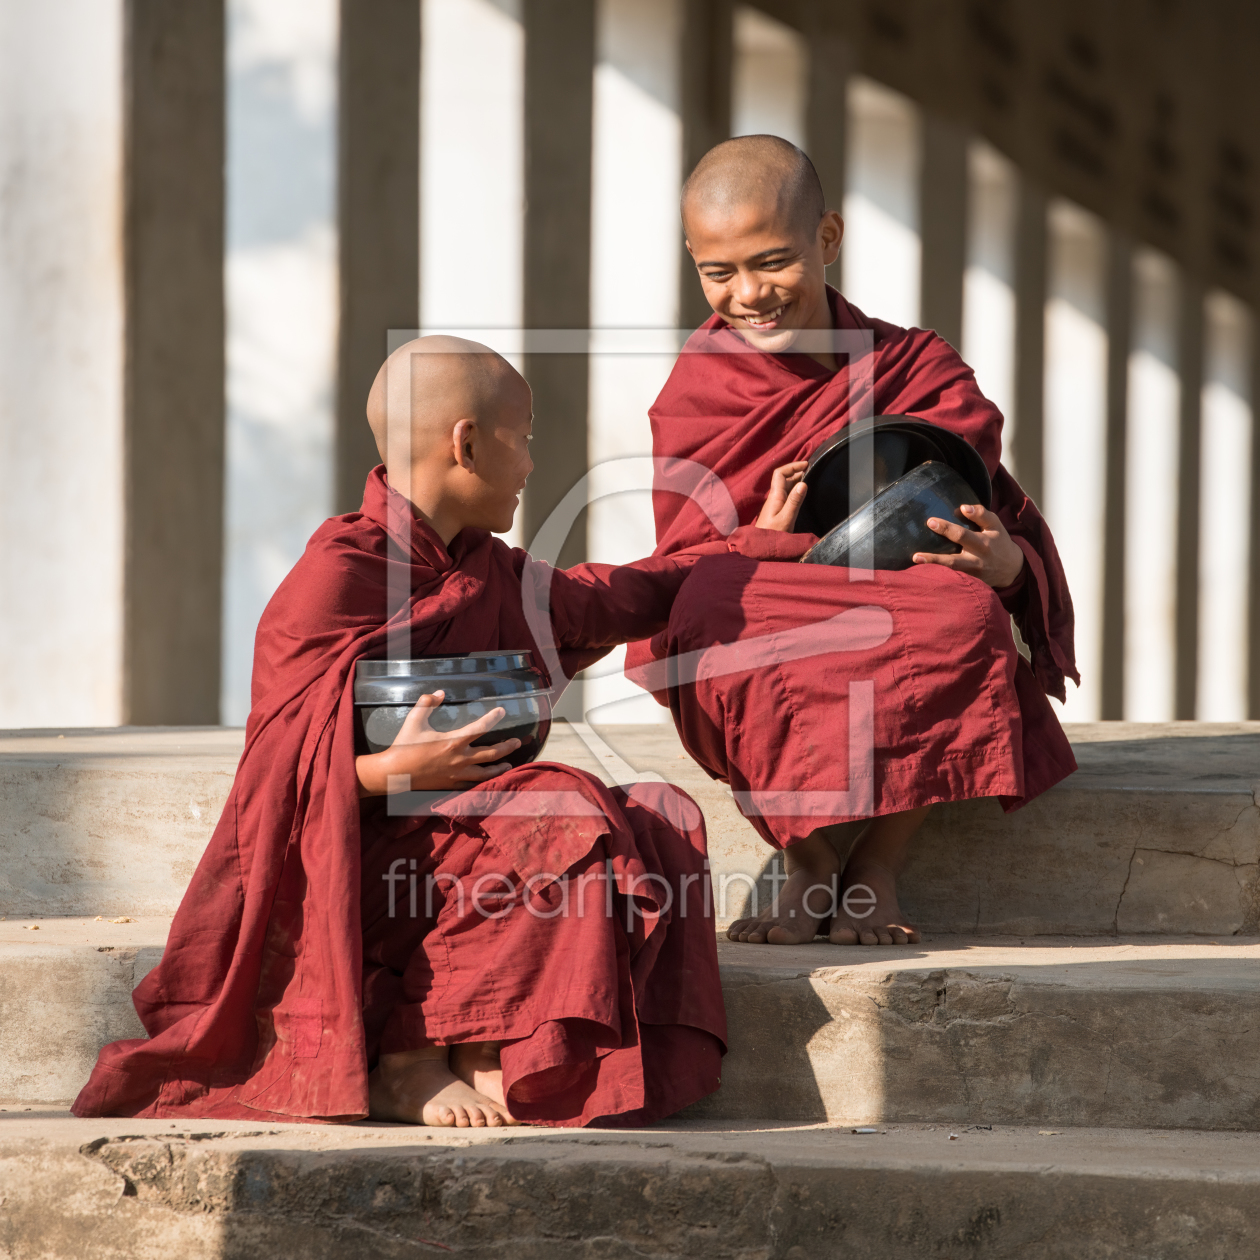 Bild-Nr.: 12365928 Zwei junge Mönche mit Reisschalen erstellt von eyetronic